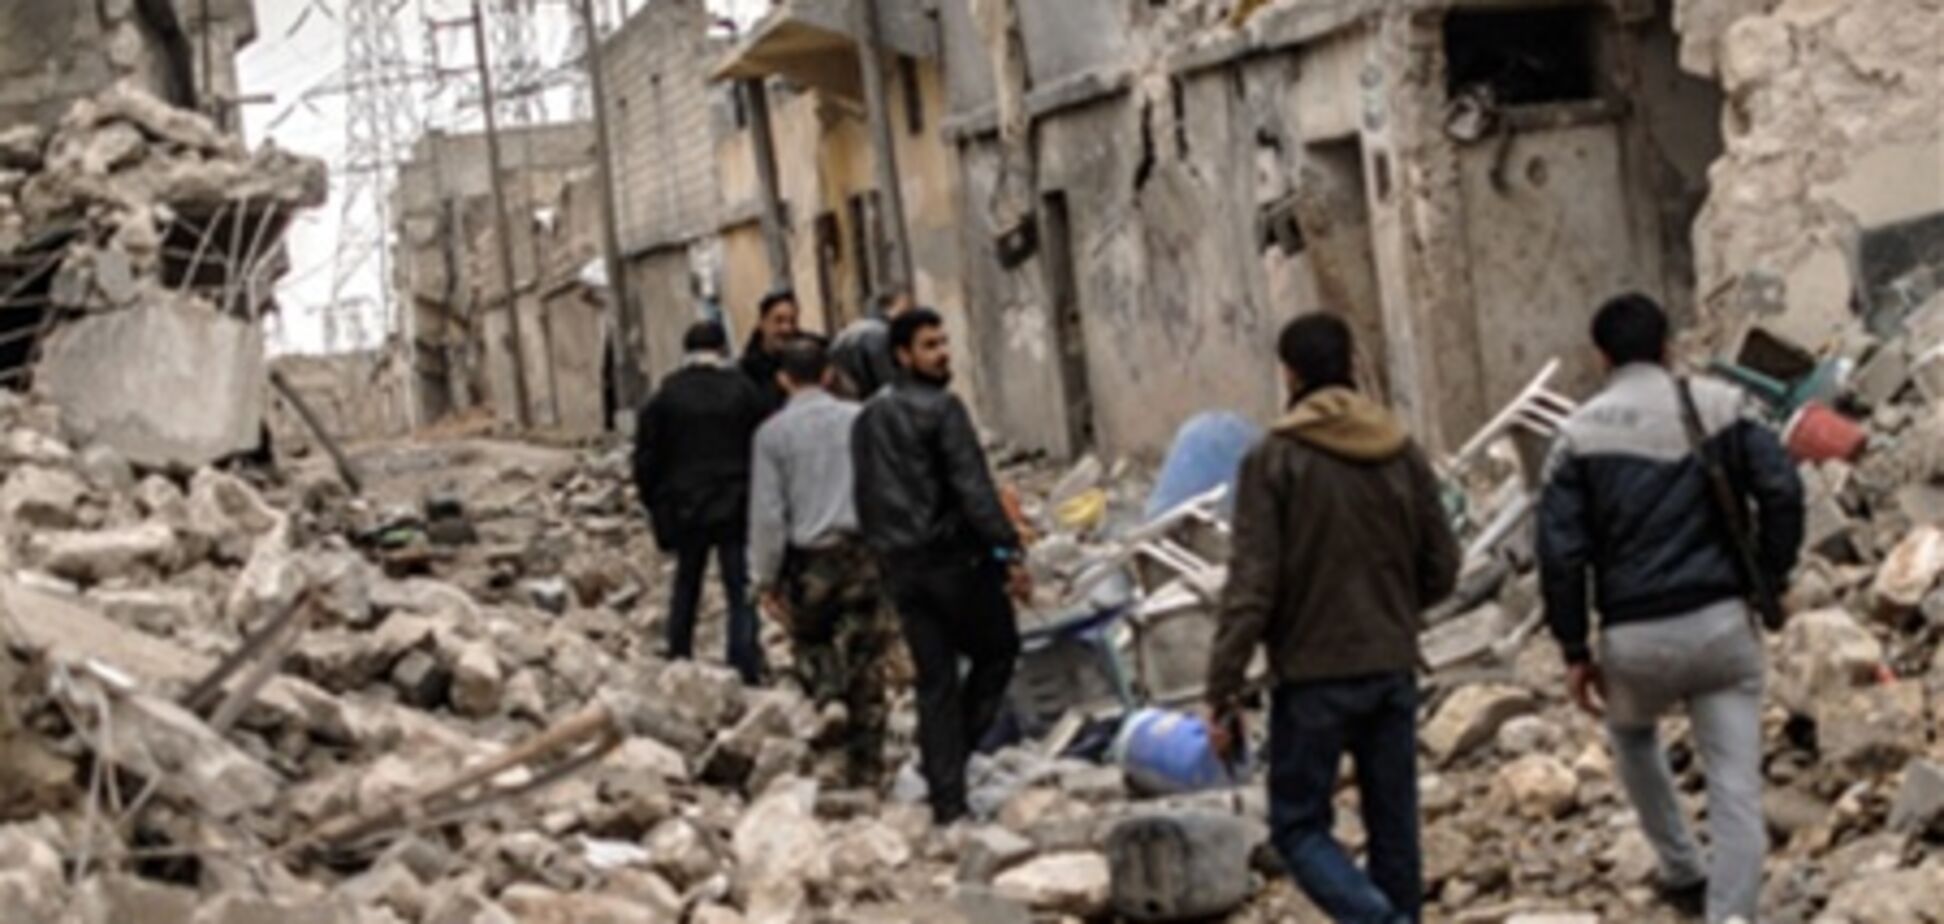 ООН: число жертв конфликта в Сирии приближается к 70 тысячам